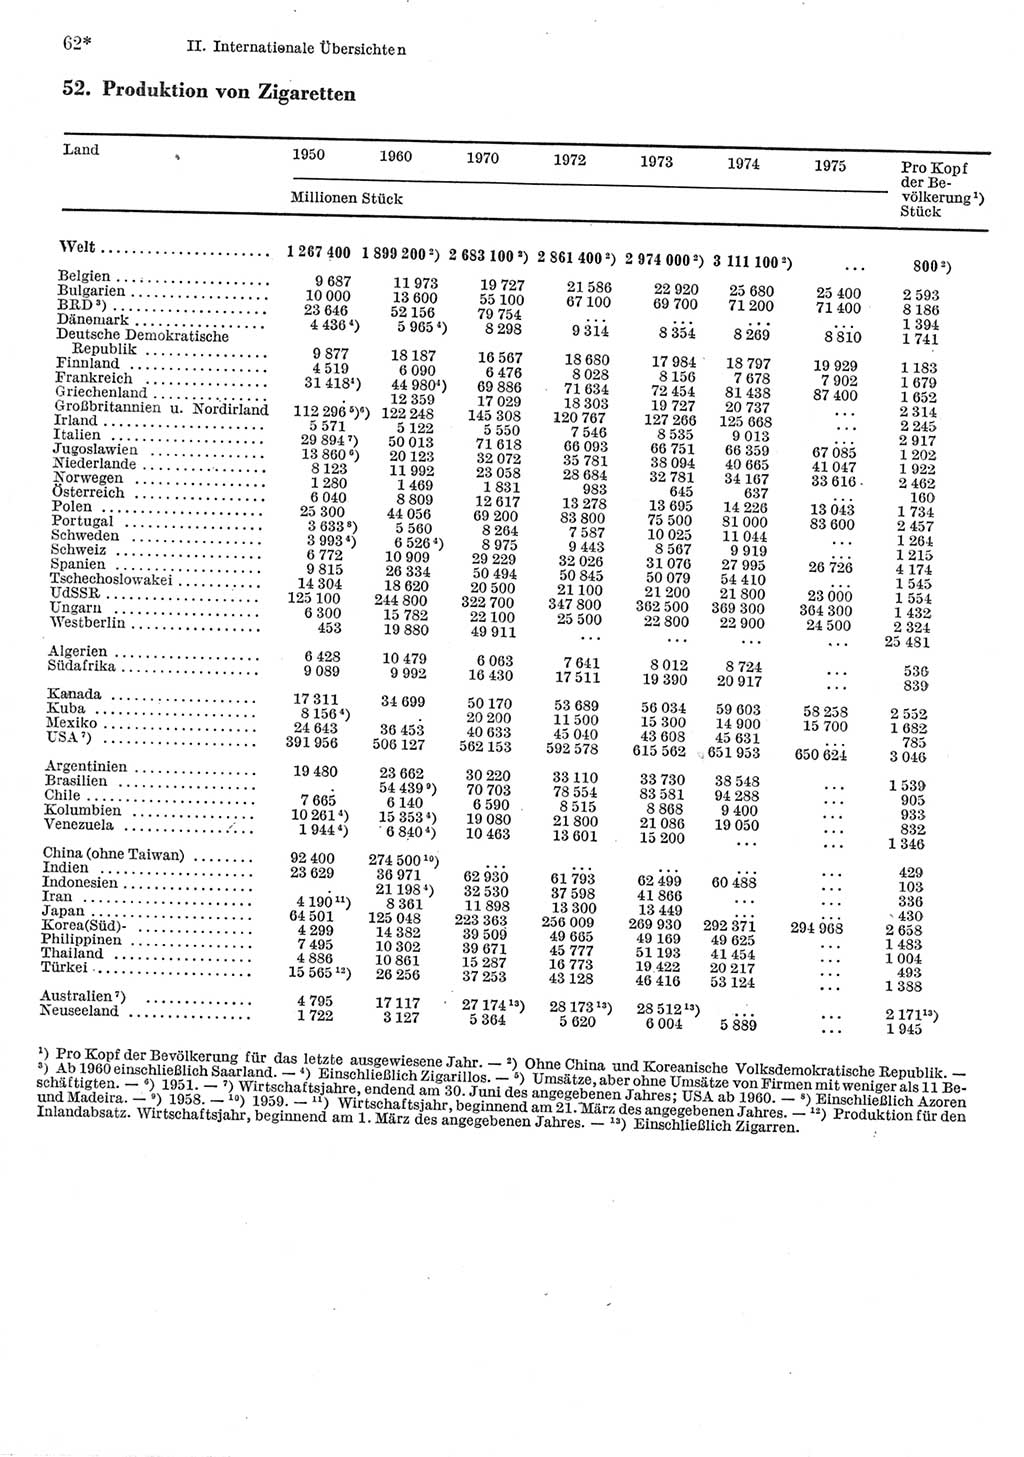 Statistisches Jahrbuch der Deutschen Demokratischen Republik (DDR) 1977, Seite 62 (Stat. Jb. DDR 1977, S. 62)